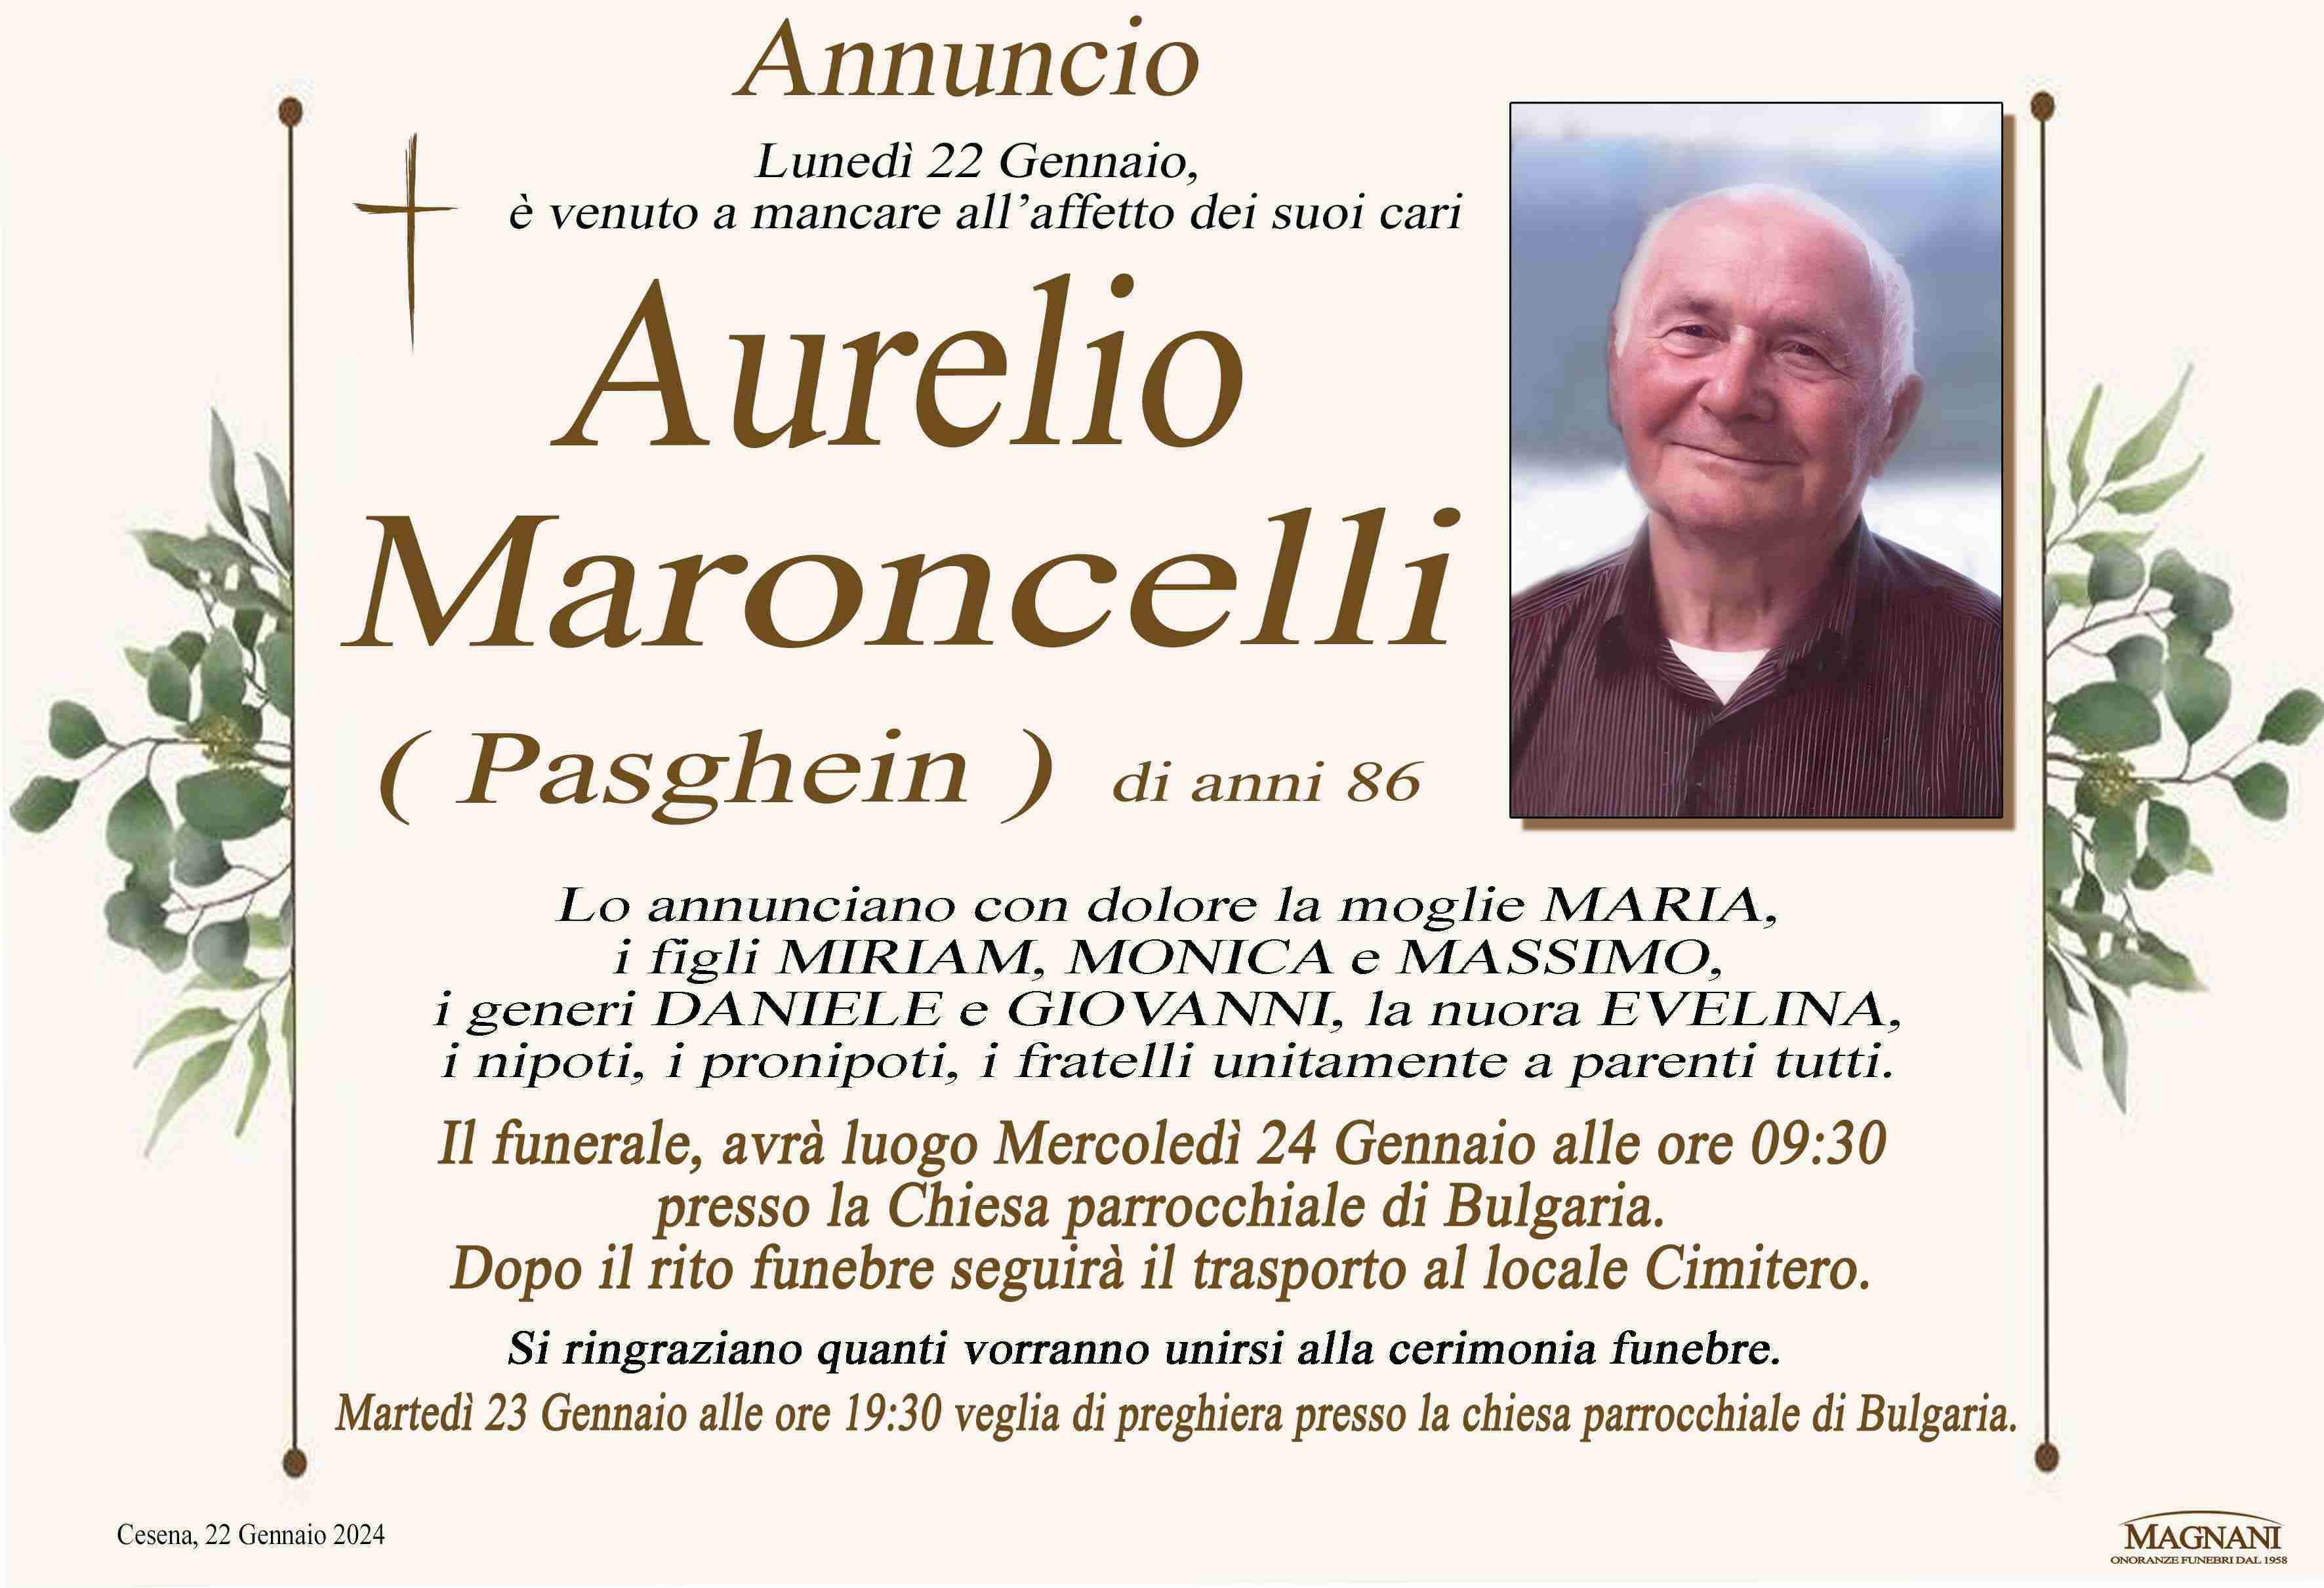 Aurelio Maroncelli